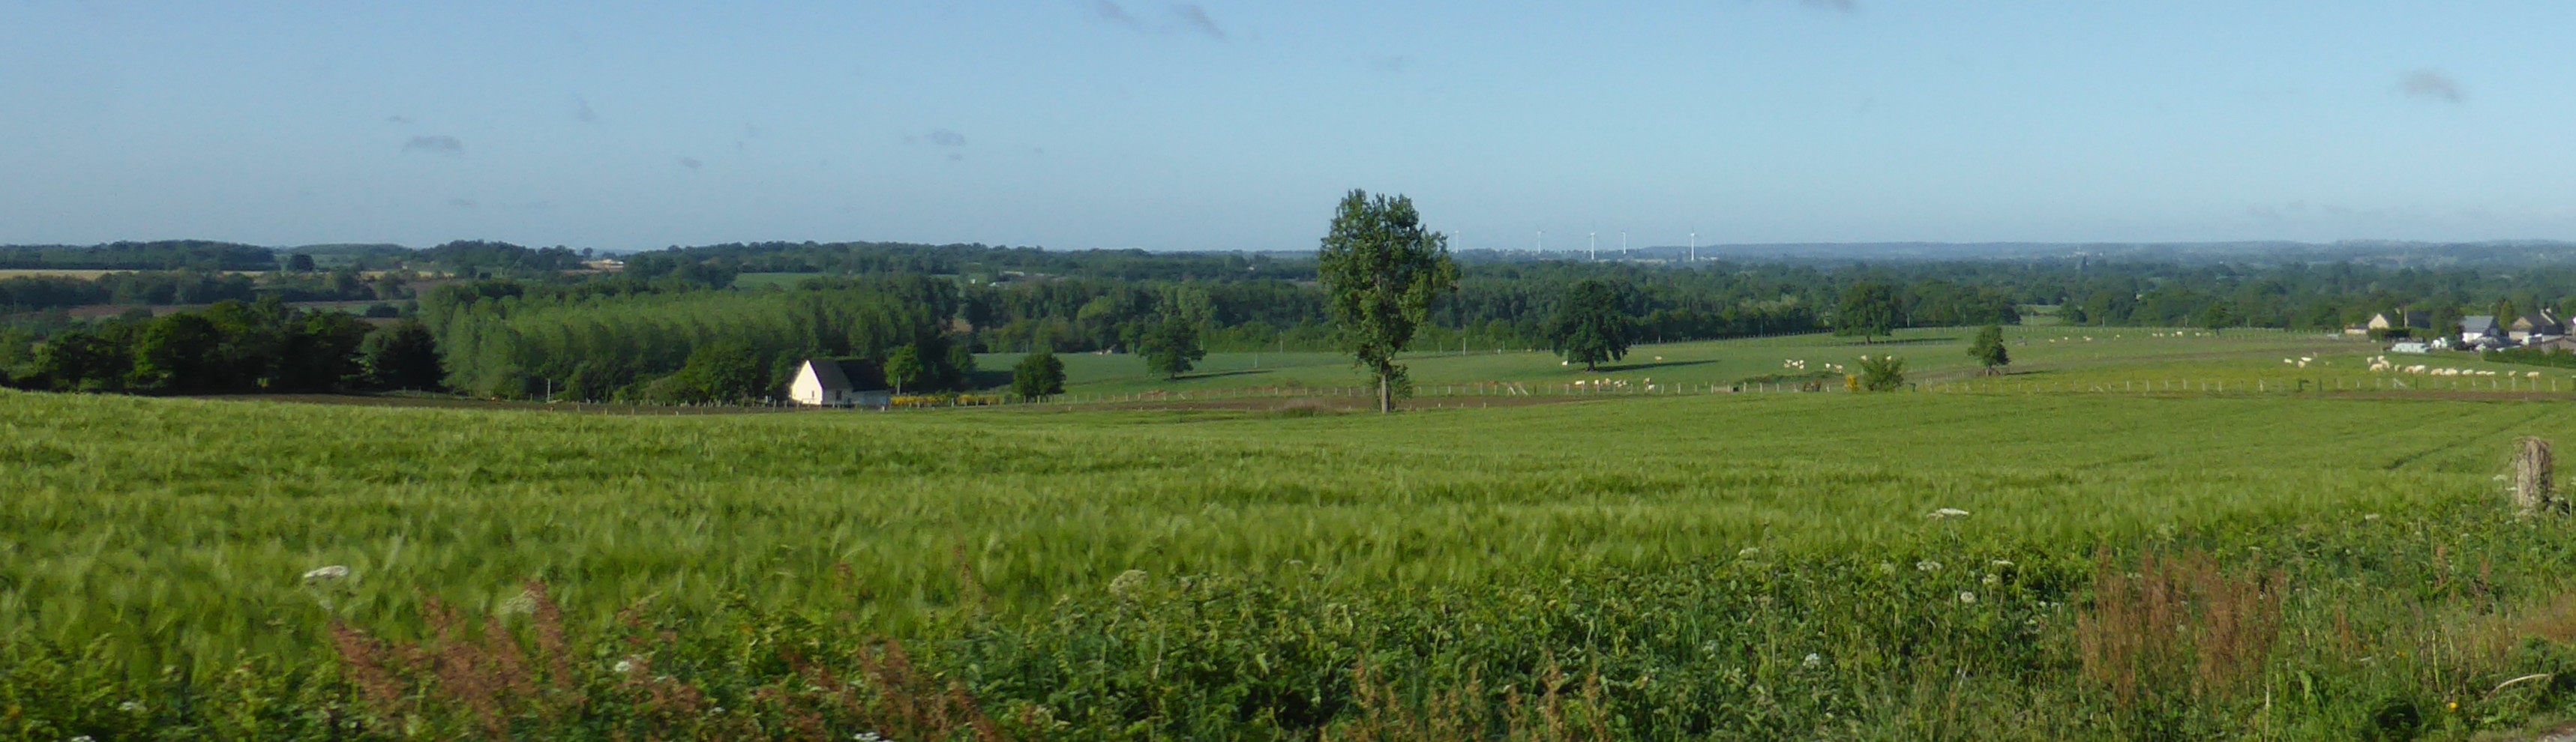 Les paysages agricoles s'ouvrent progressivement. Cette dynamique est visible de manière générale sur l'unité (Lassay-les-Châteaux – 2015) en grand format (nouvelle fenêtre)